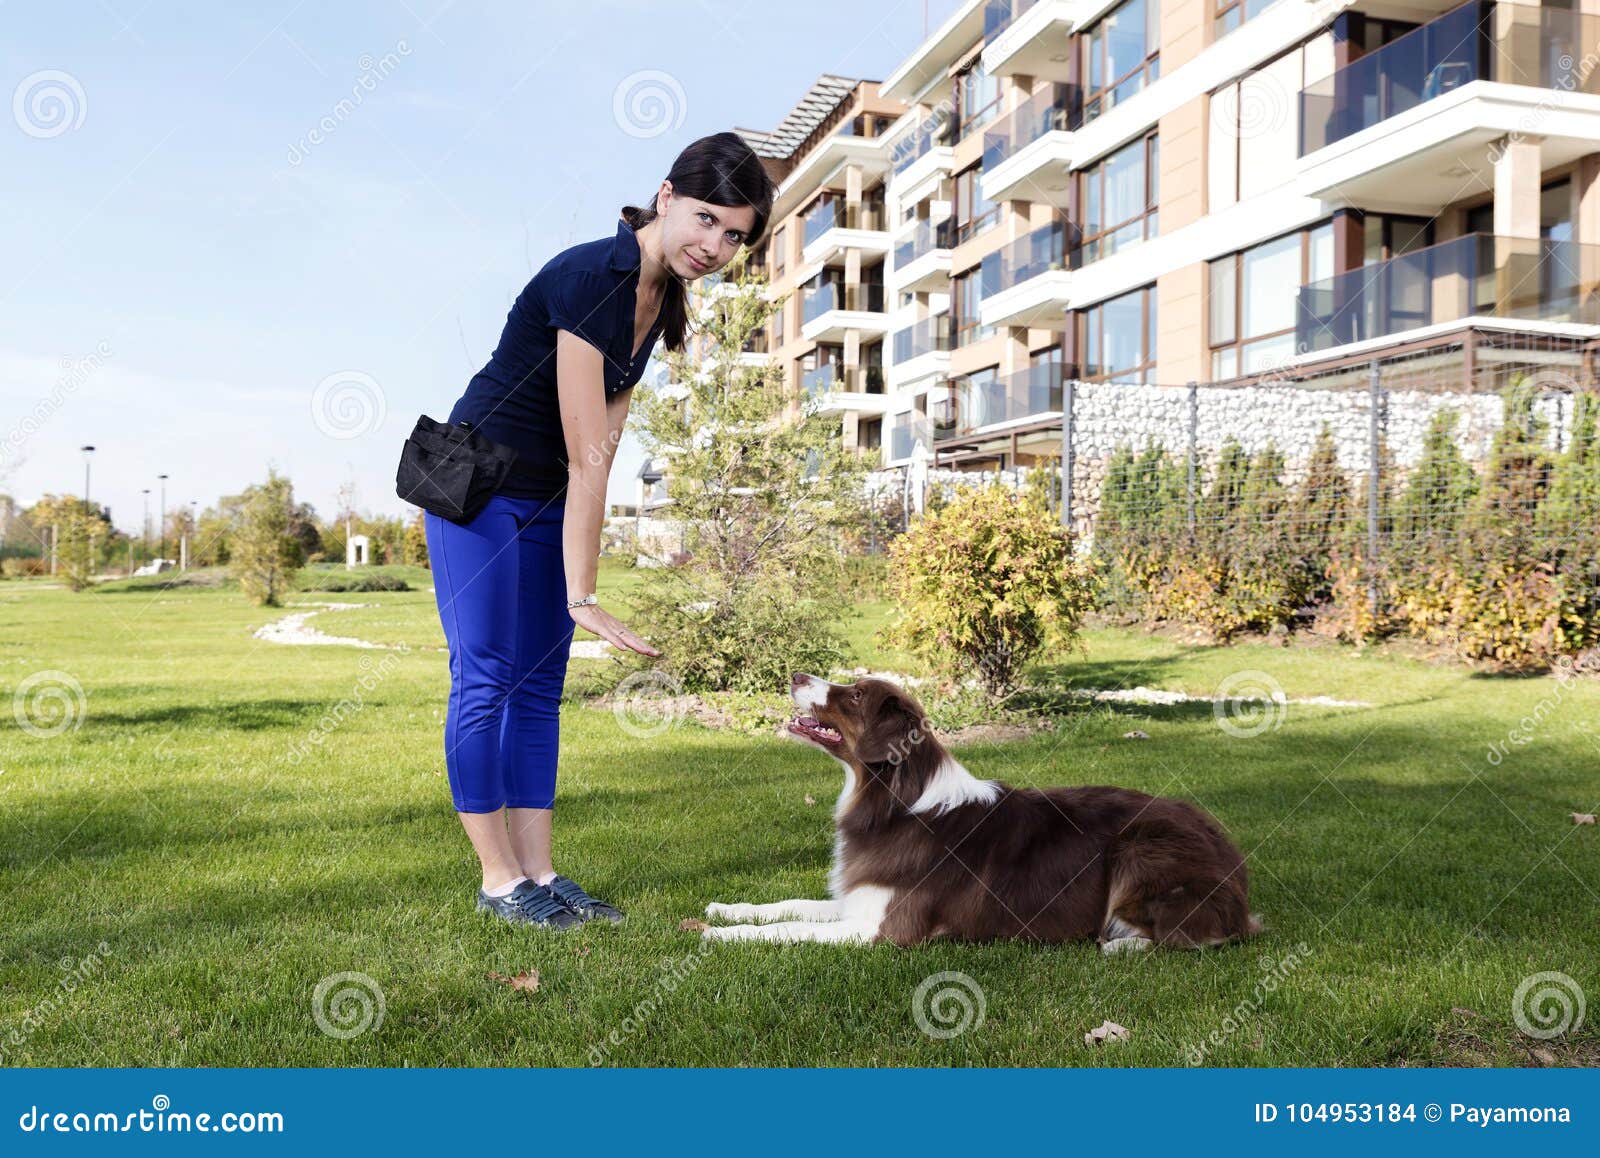 Parc à Chiots.Dog Training - Les Animaux de Compagnie